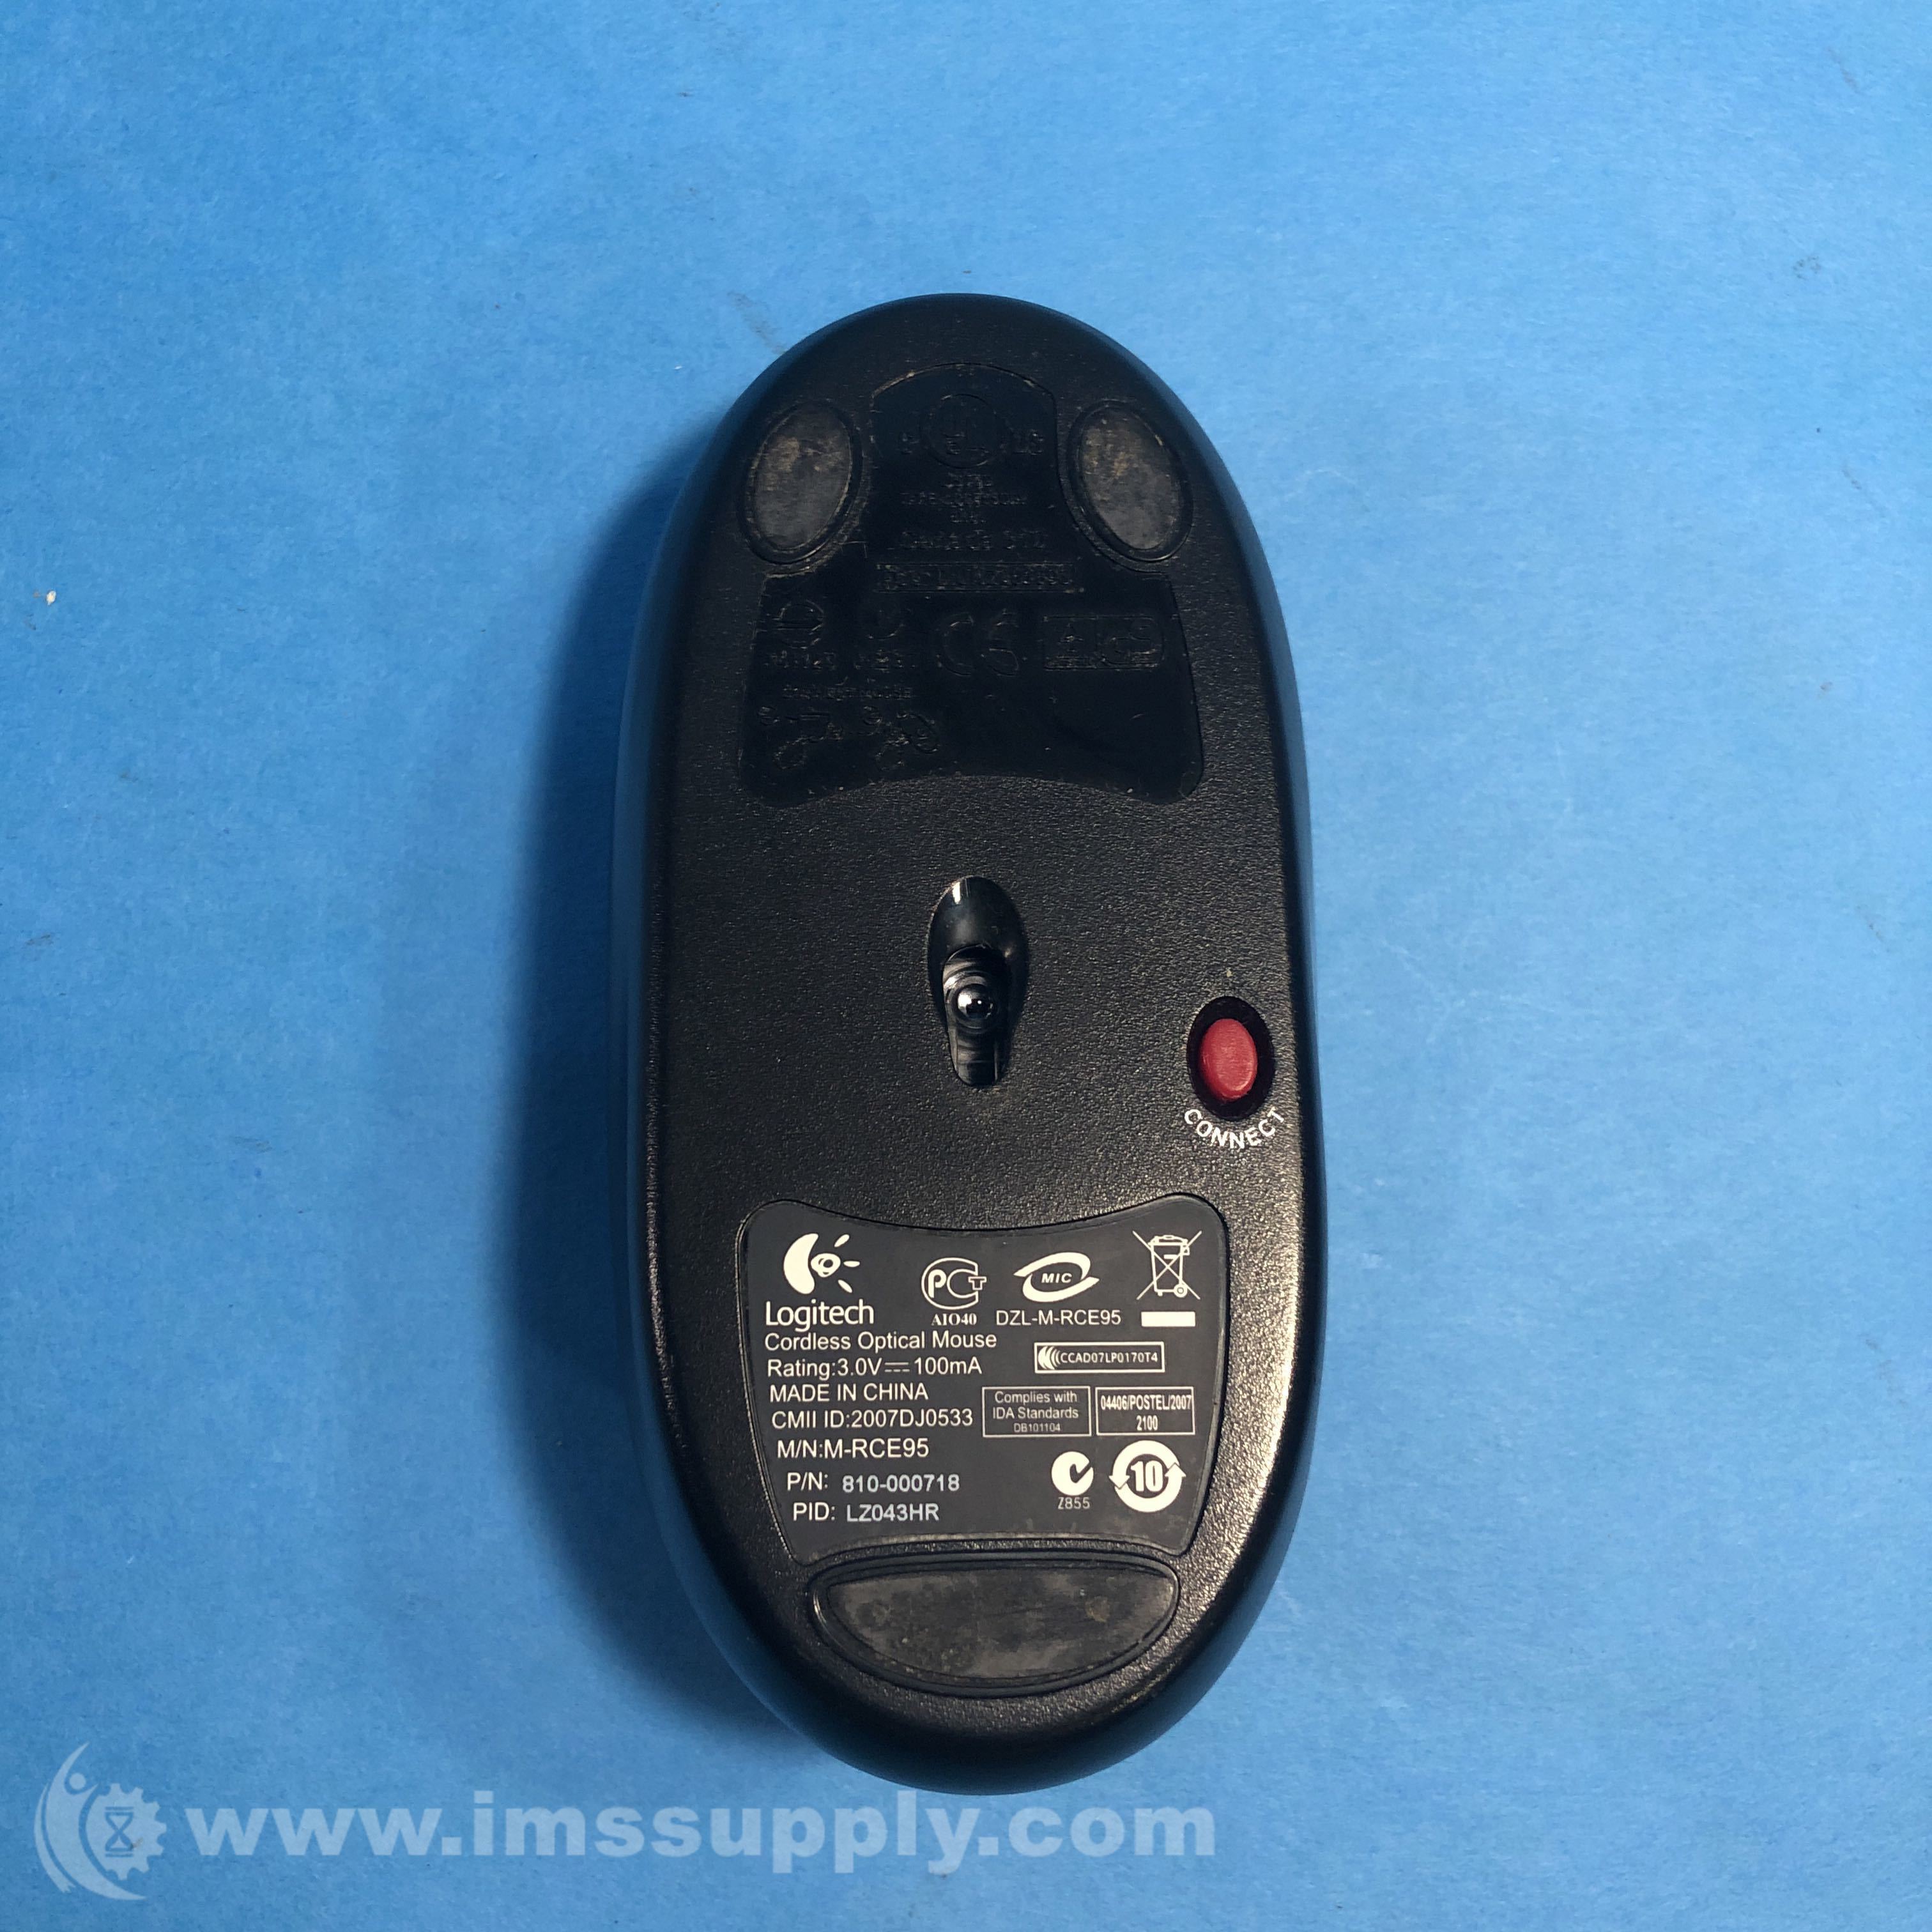 Reporter landing semafor Logitech 810-000718 Cordless Optical Mouse - IMS Supply